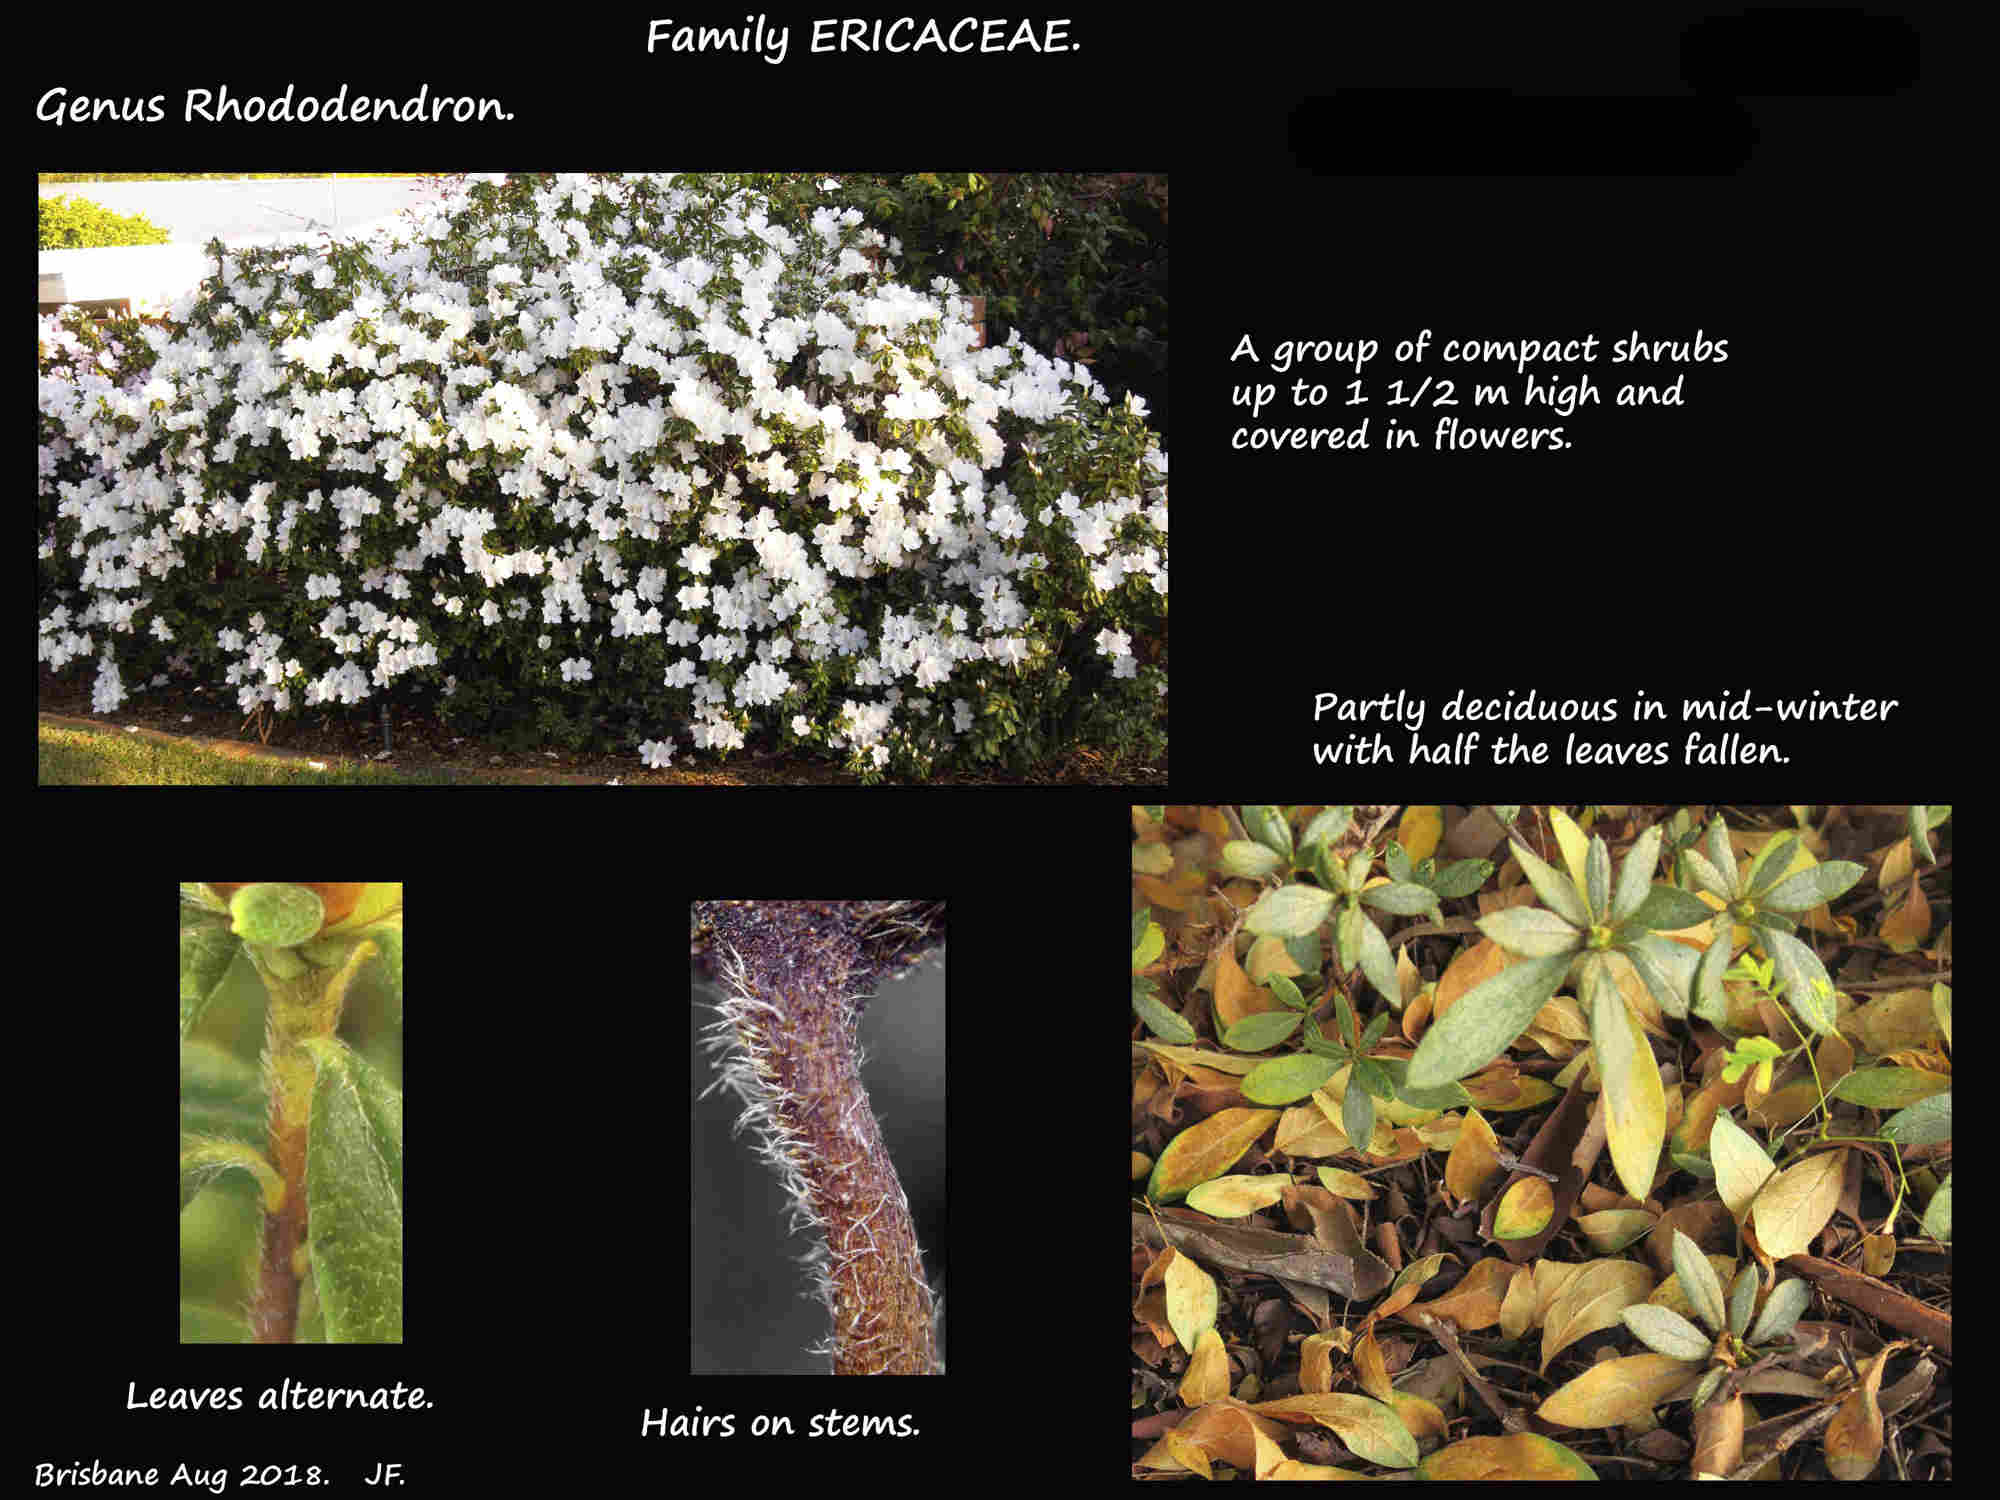 1 Azalea shrub and stem hairs